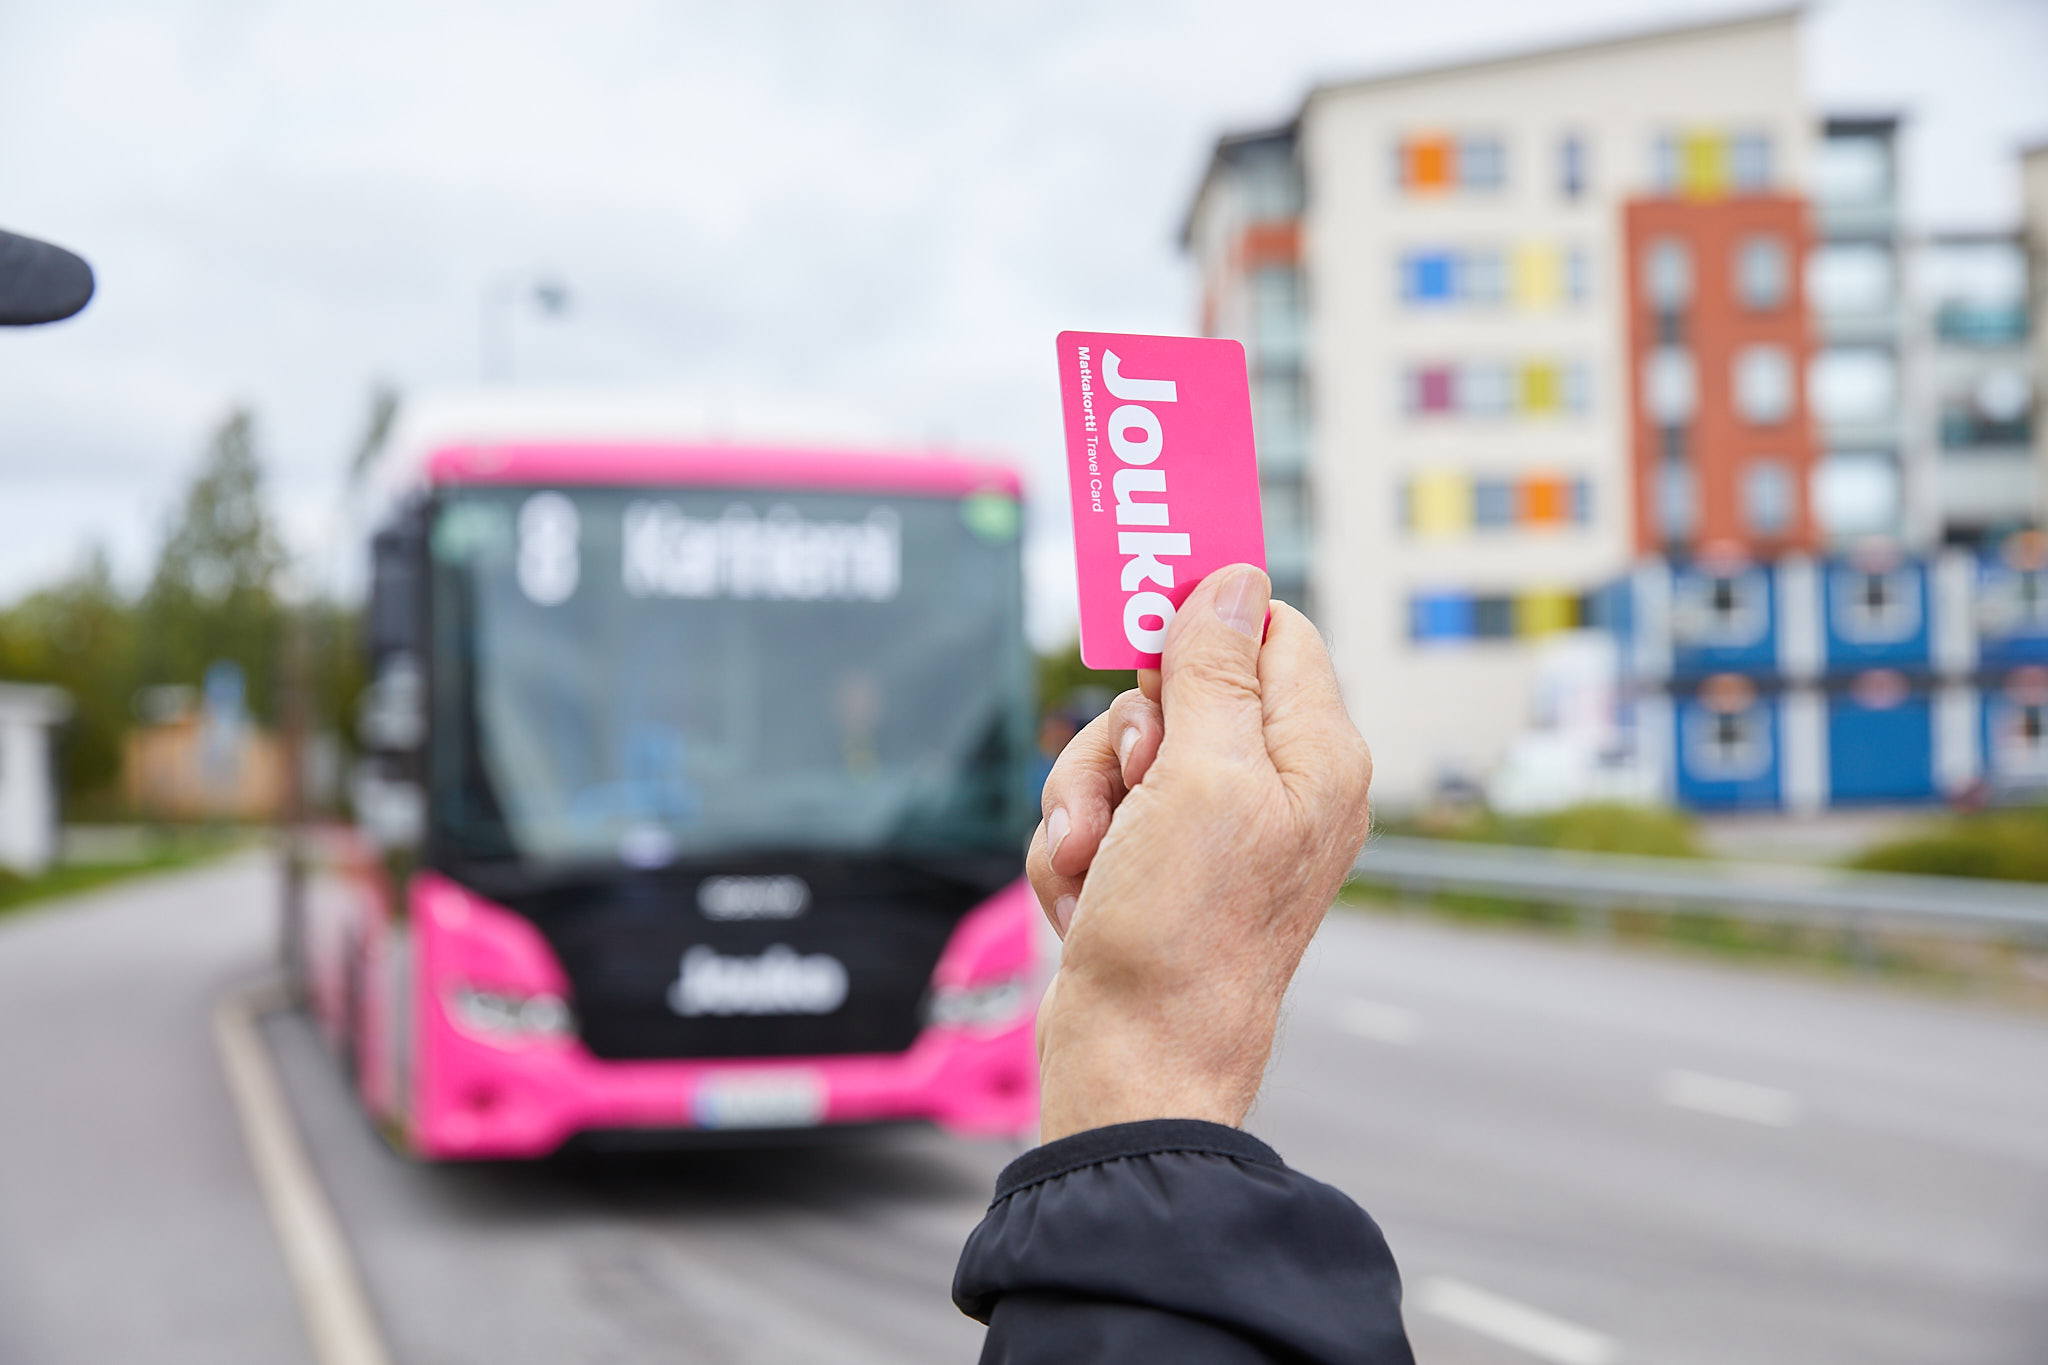 Henkilö heiluttamassa pinkkiä bussikorttia bussille.